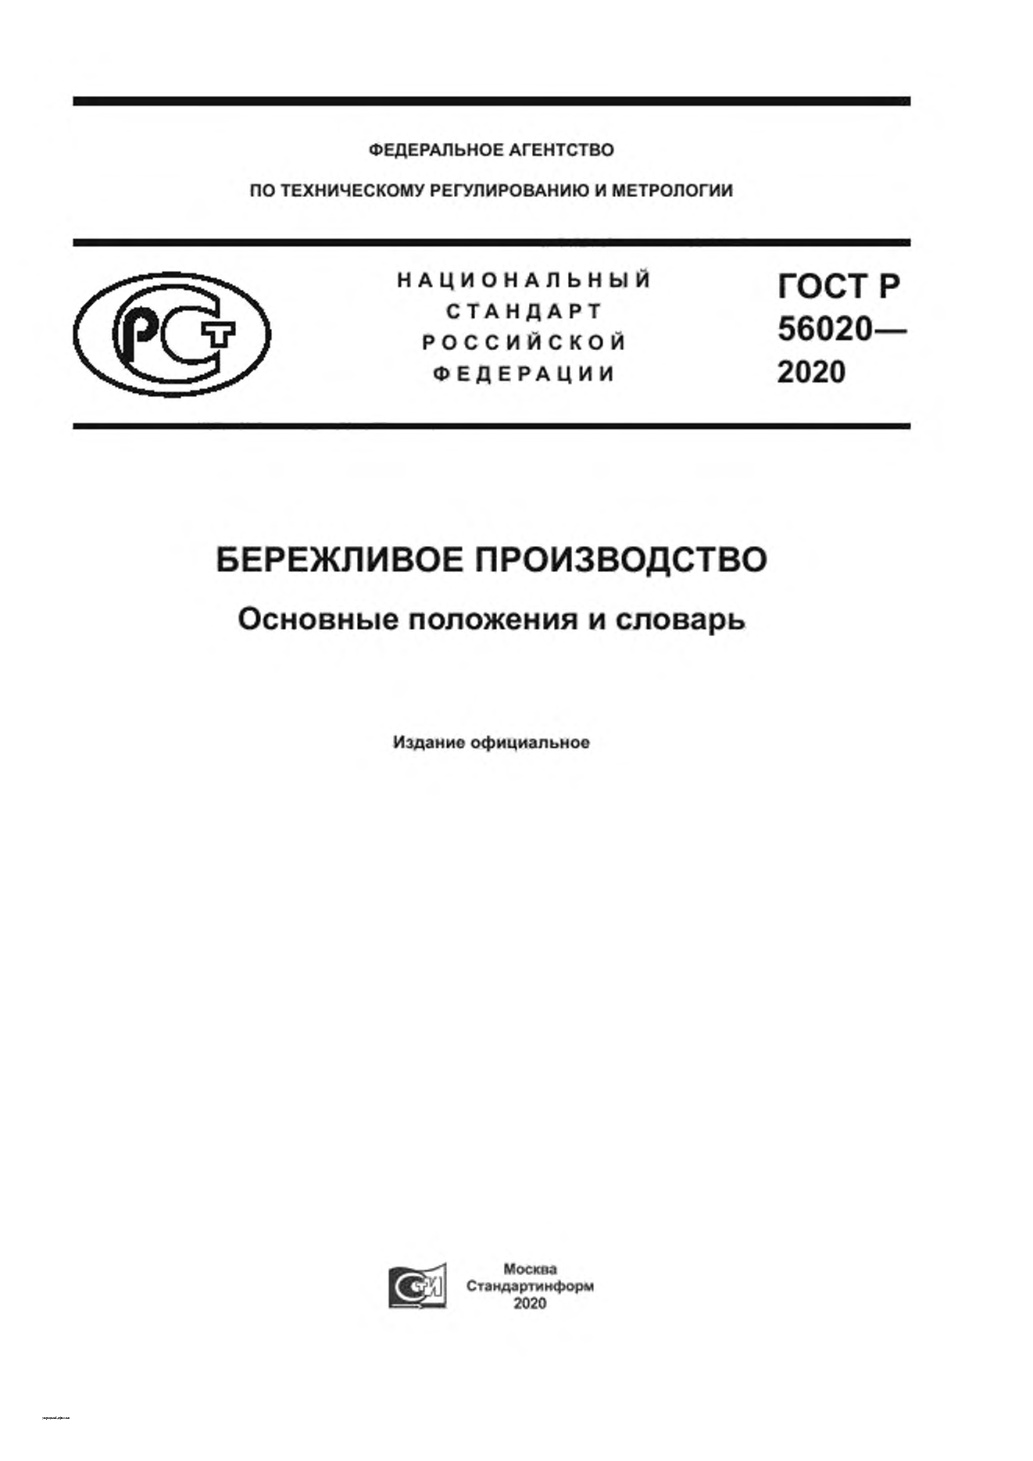 ГОСТ Р 56020-2020 «Бережливое производство. Основные положения и словарь»